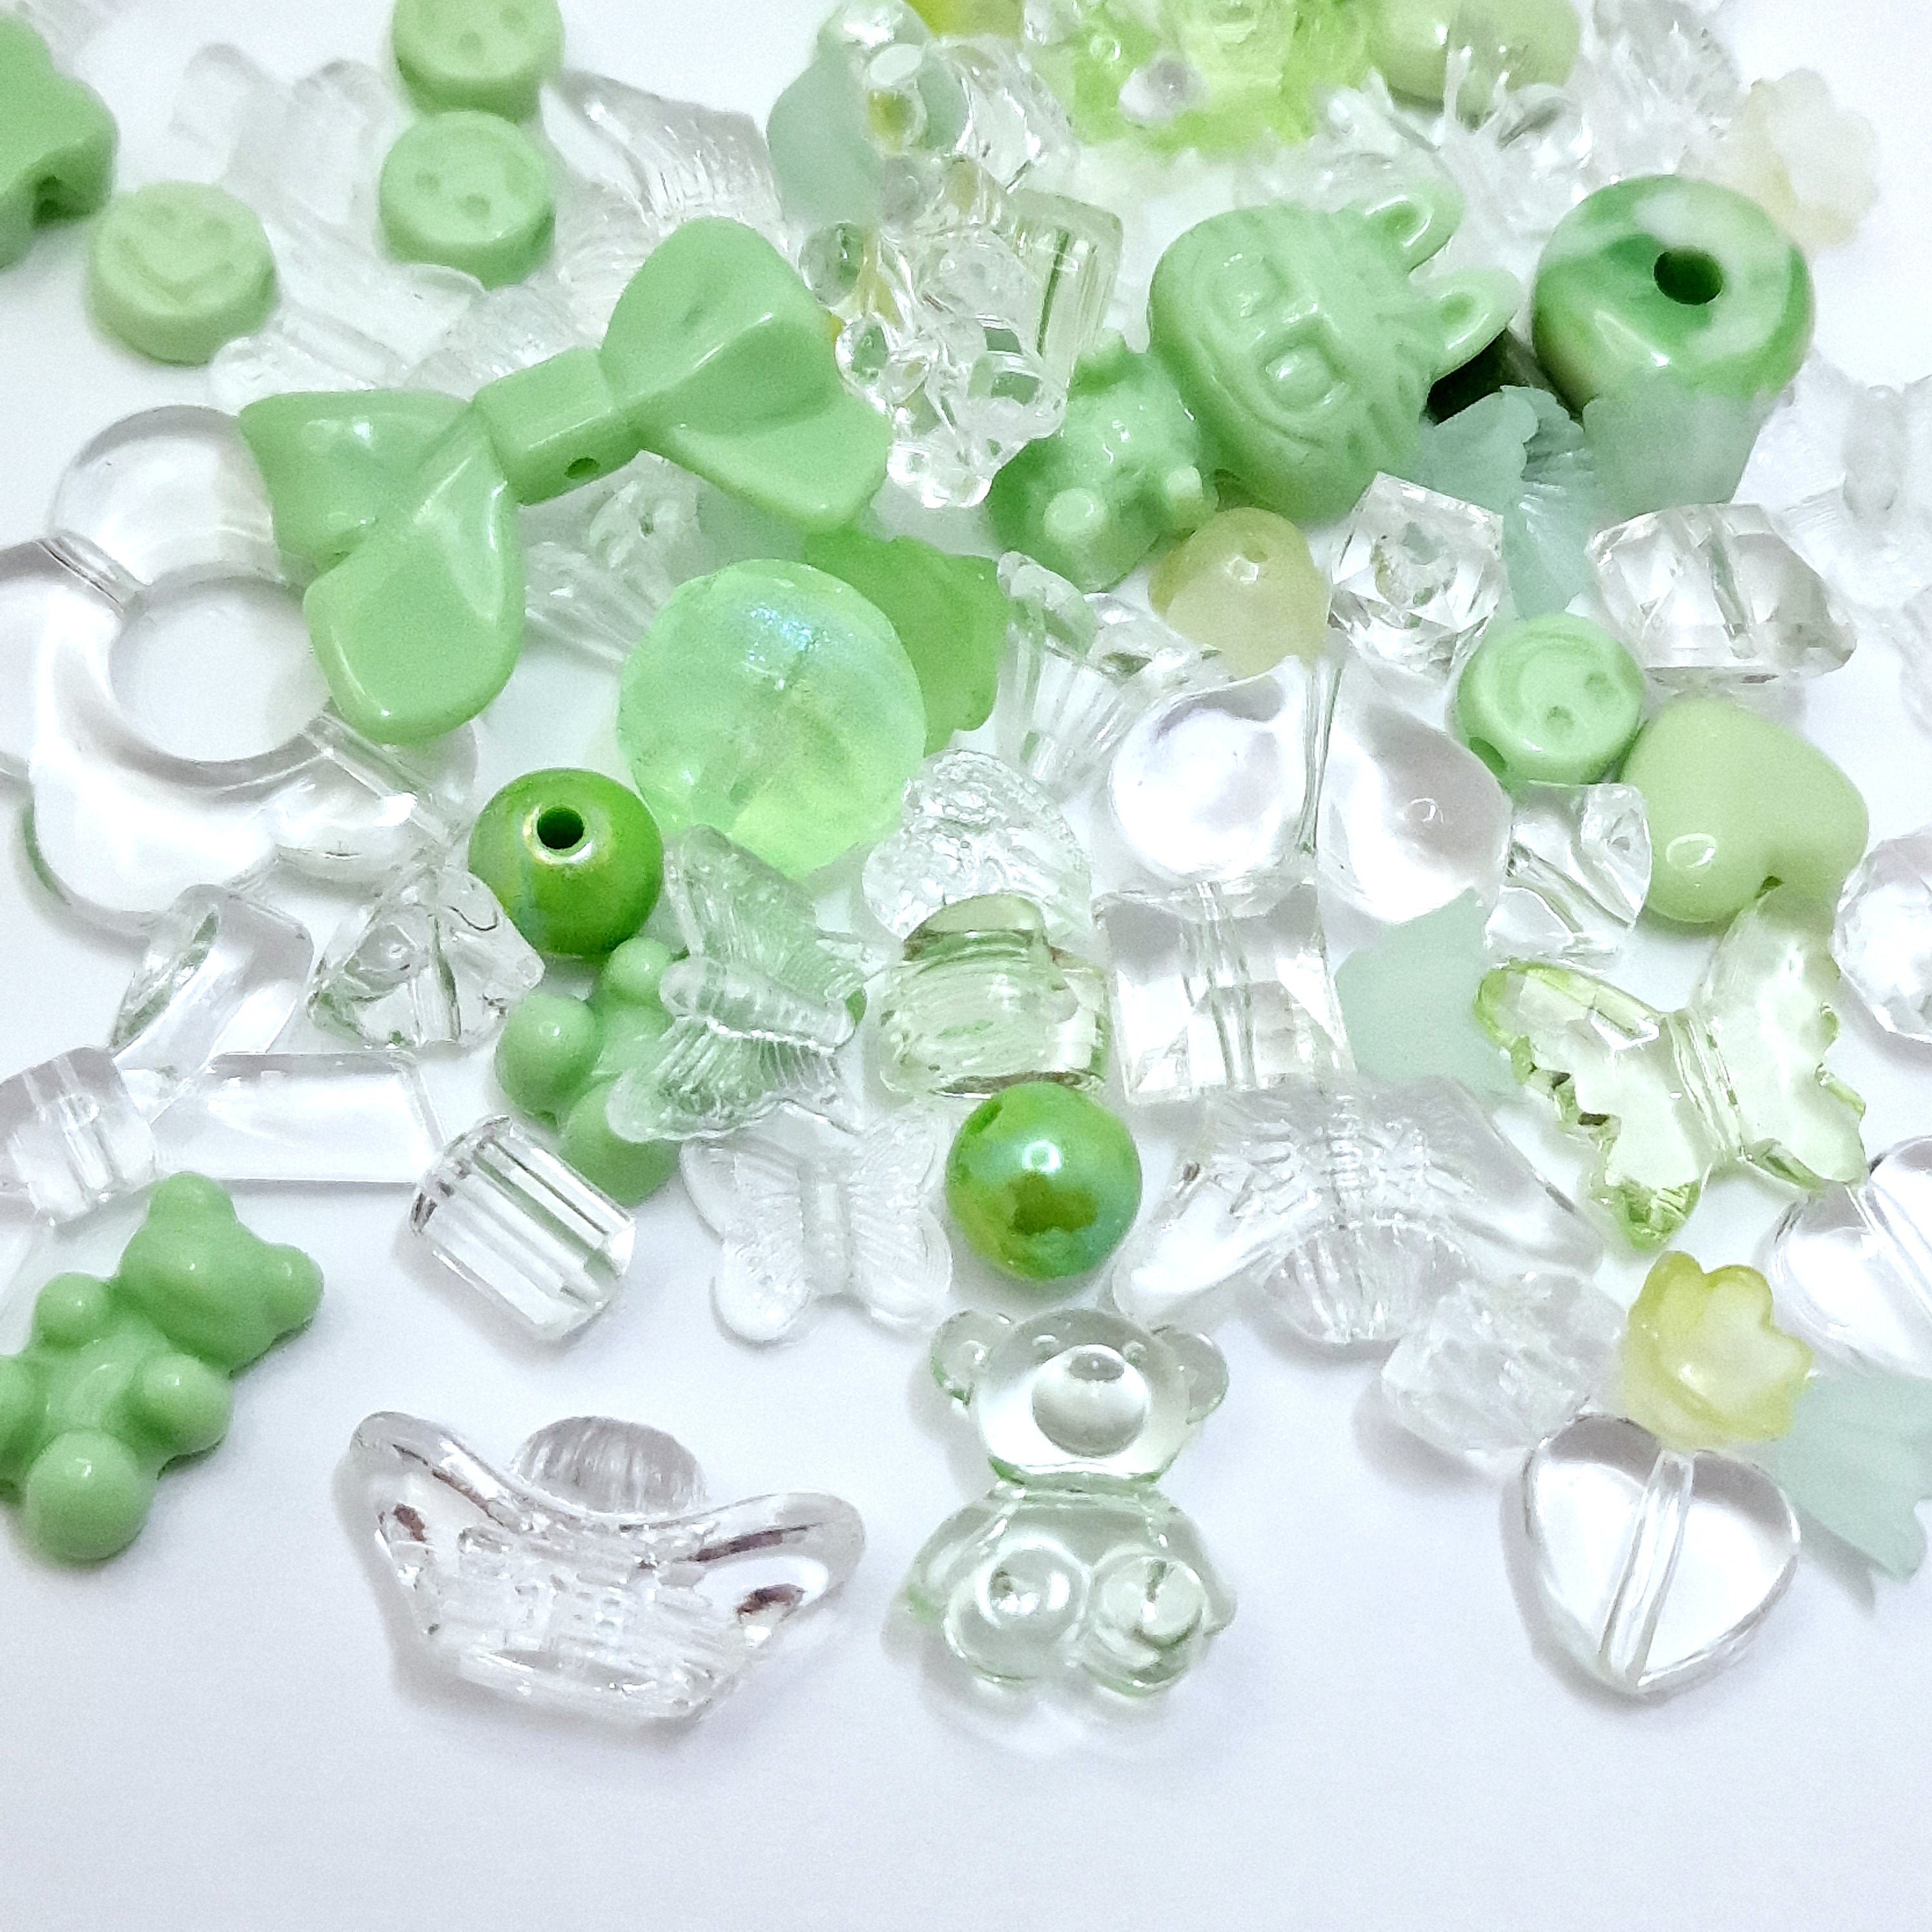 MajorCrafts 50g Green Theme Mixed Shapes & Sizes Acrylic Beads